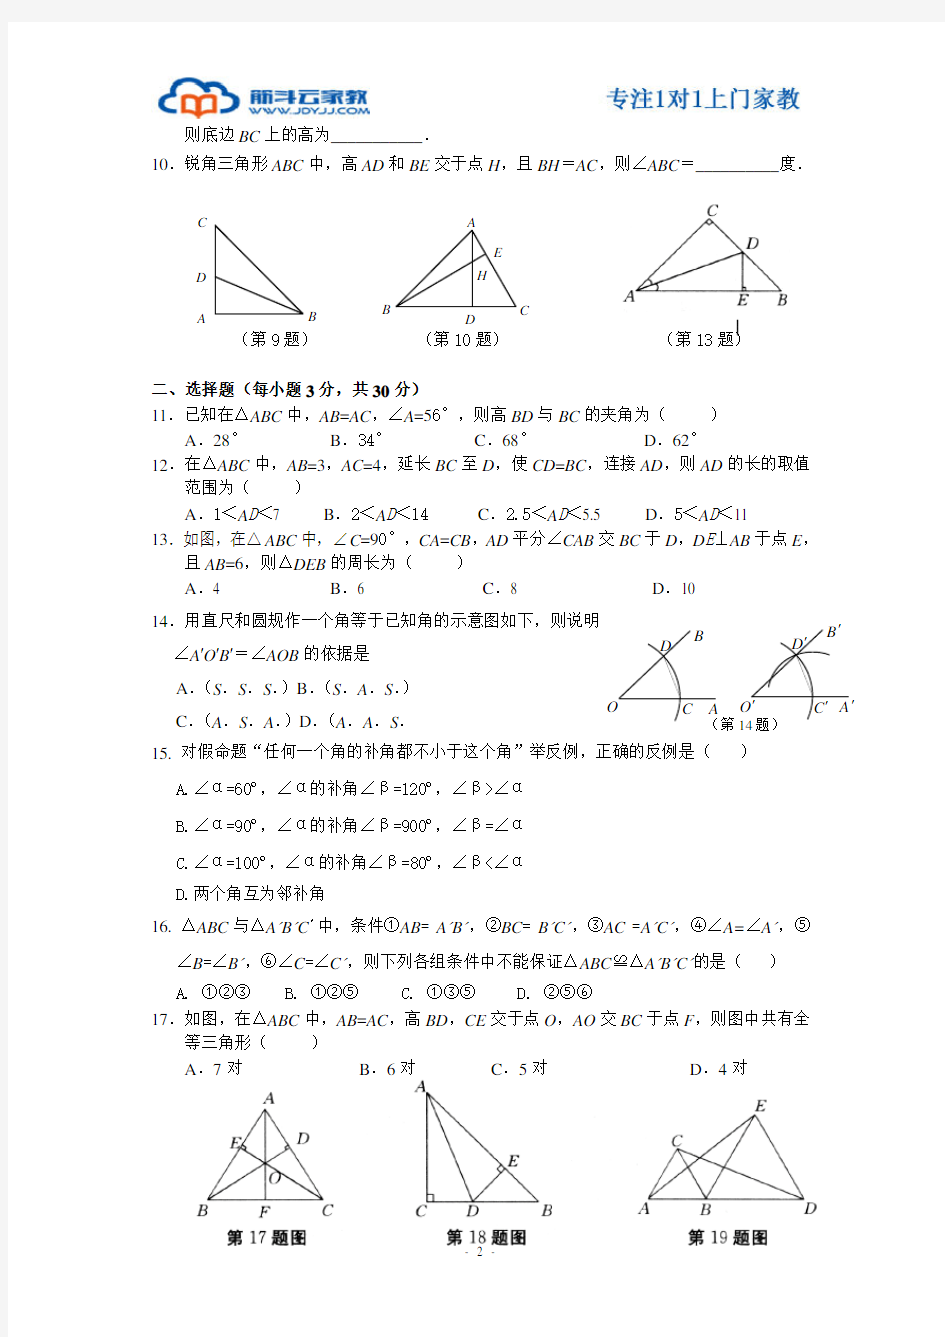 (完整)上海初二数学几何证明练习之全等三角形